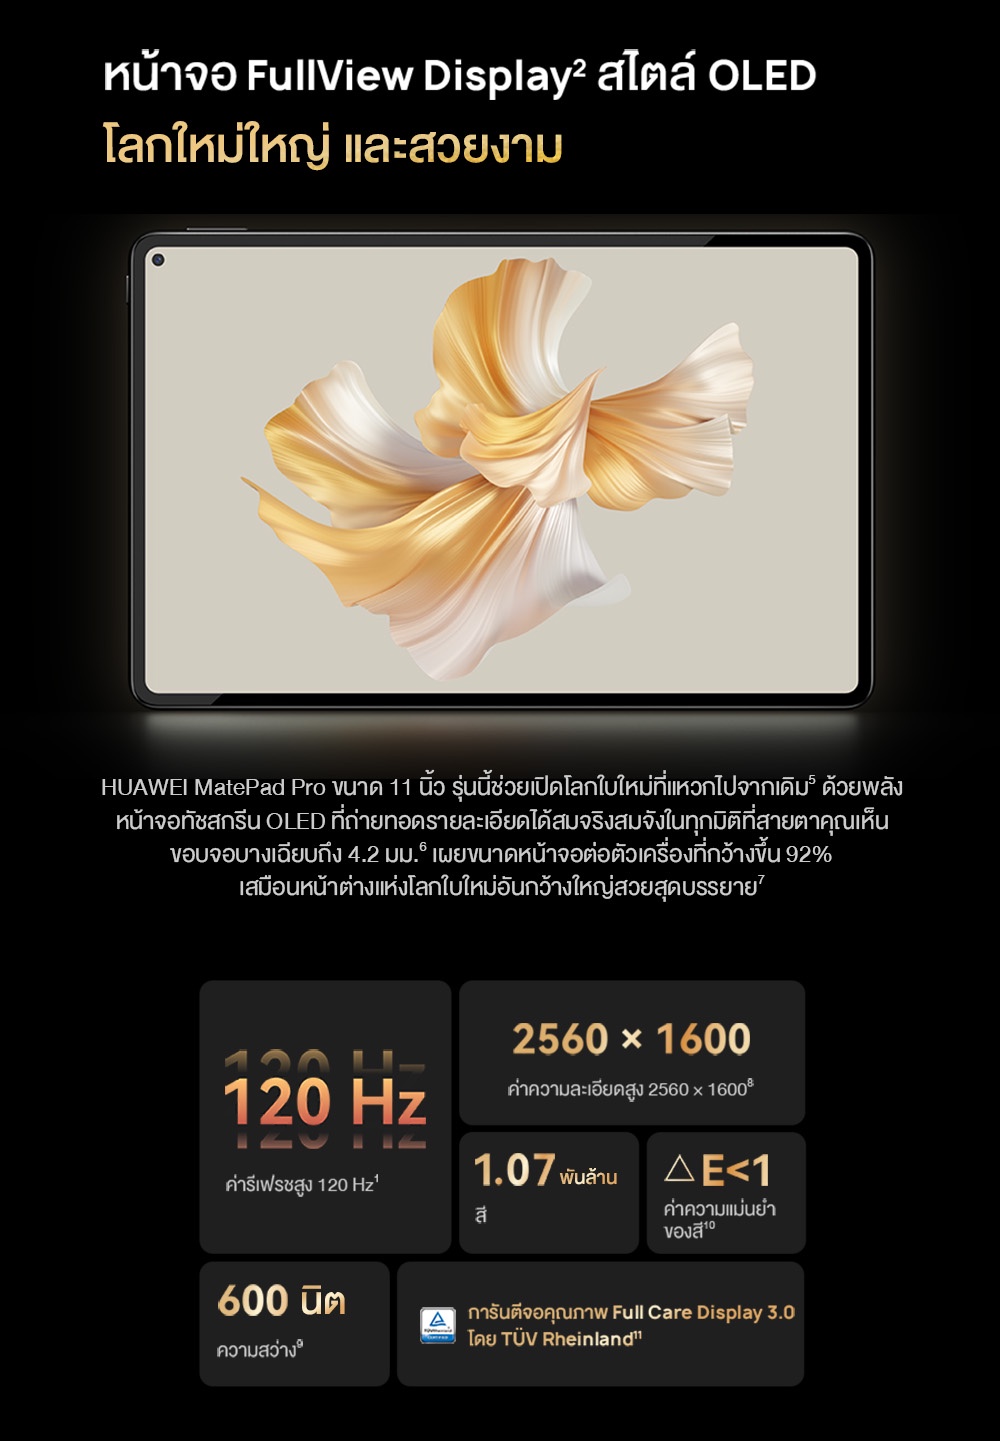 คำอธิบายเพิ่มเติมเกี่ยวกับ HUAWEI MatePad Pro 11 แท็บเล็ต  หน้าจอ OLED 120 Hz  Super Device  ประสิทธิภาพระดับมืออาชีพ  ร้านค้าอย่างเป็นทางการ